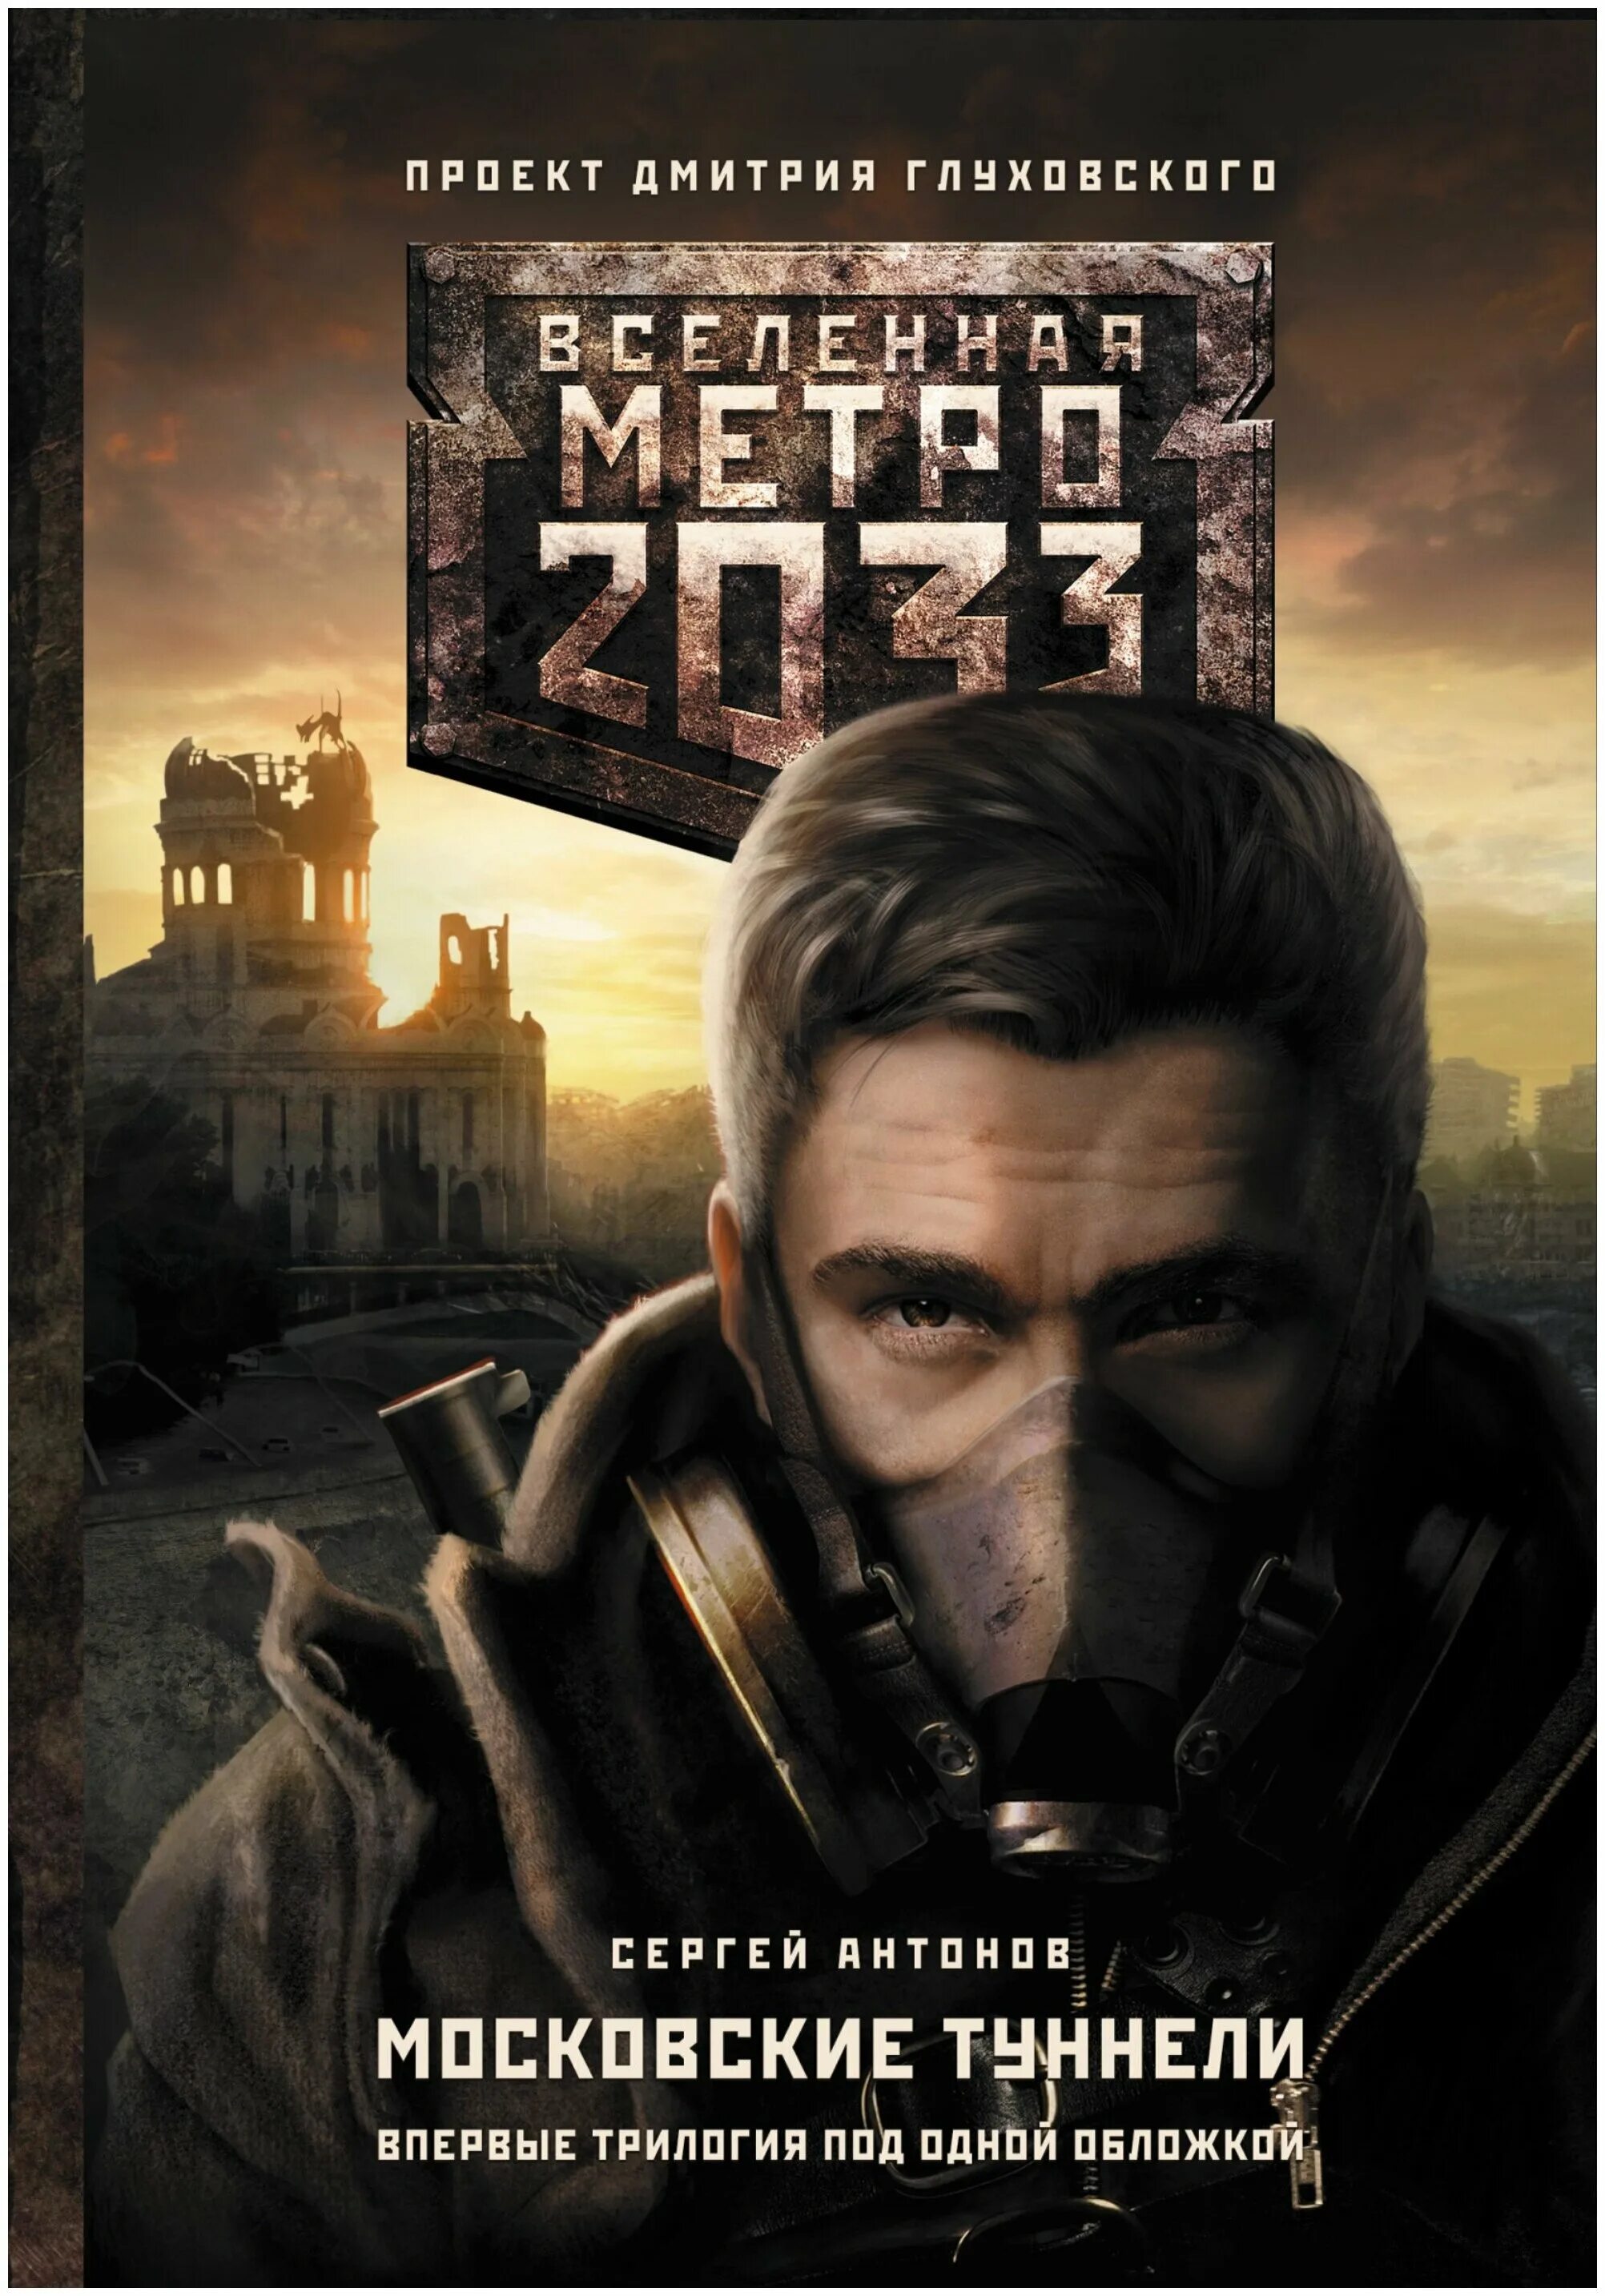 Книга про метро 2033